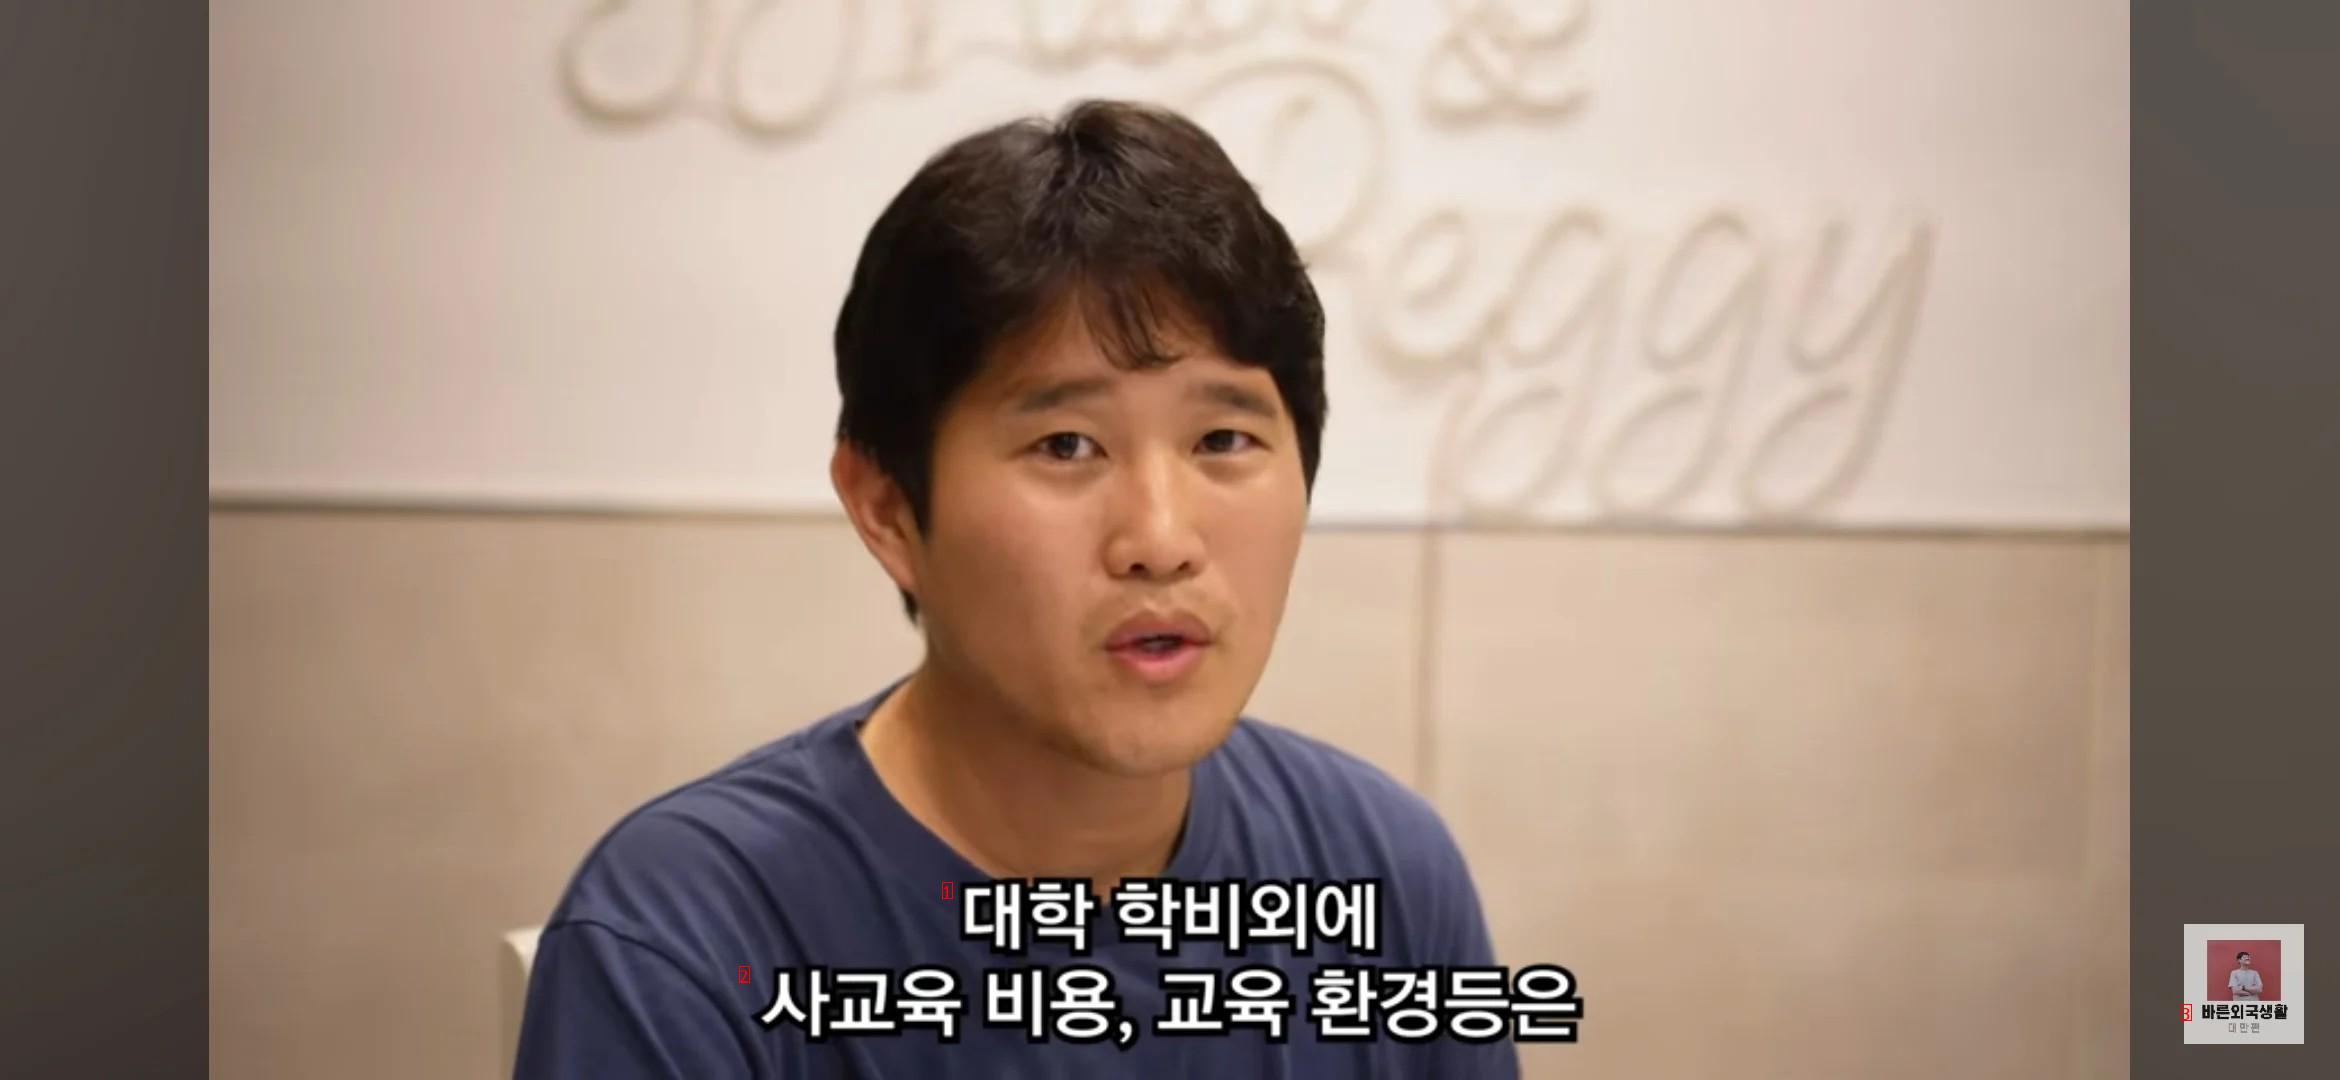 한국 사회를 지옥이라 말하는 대만방송